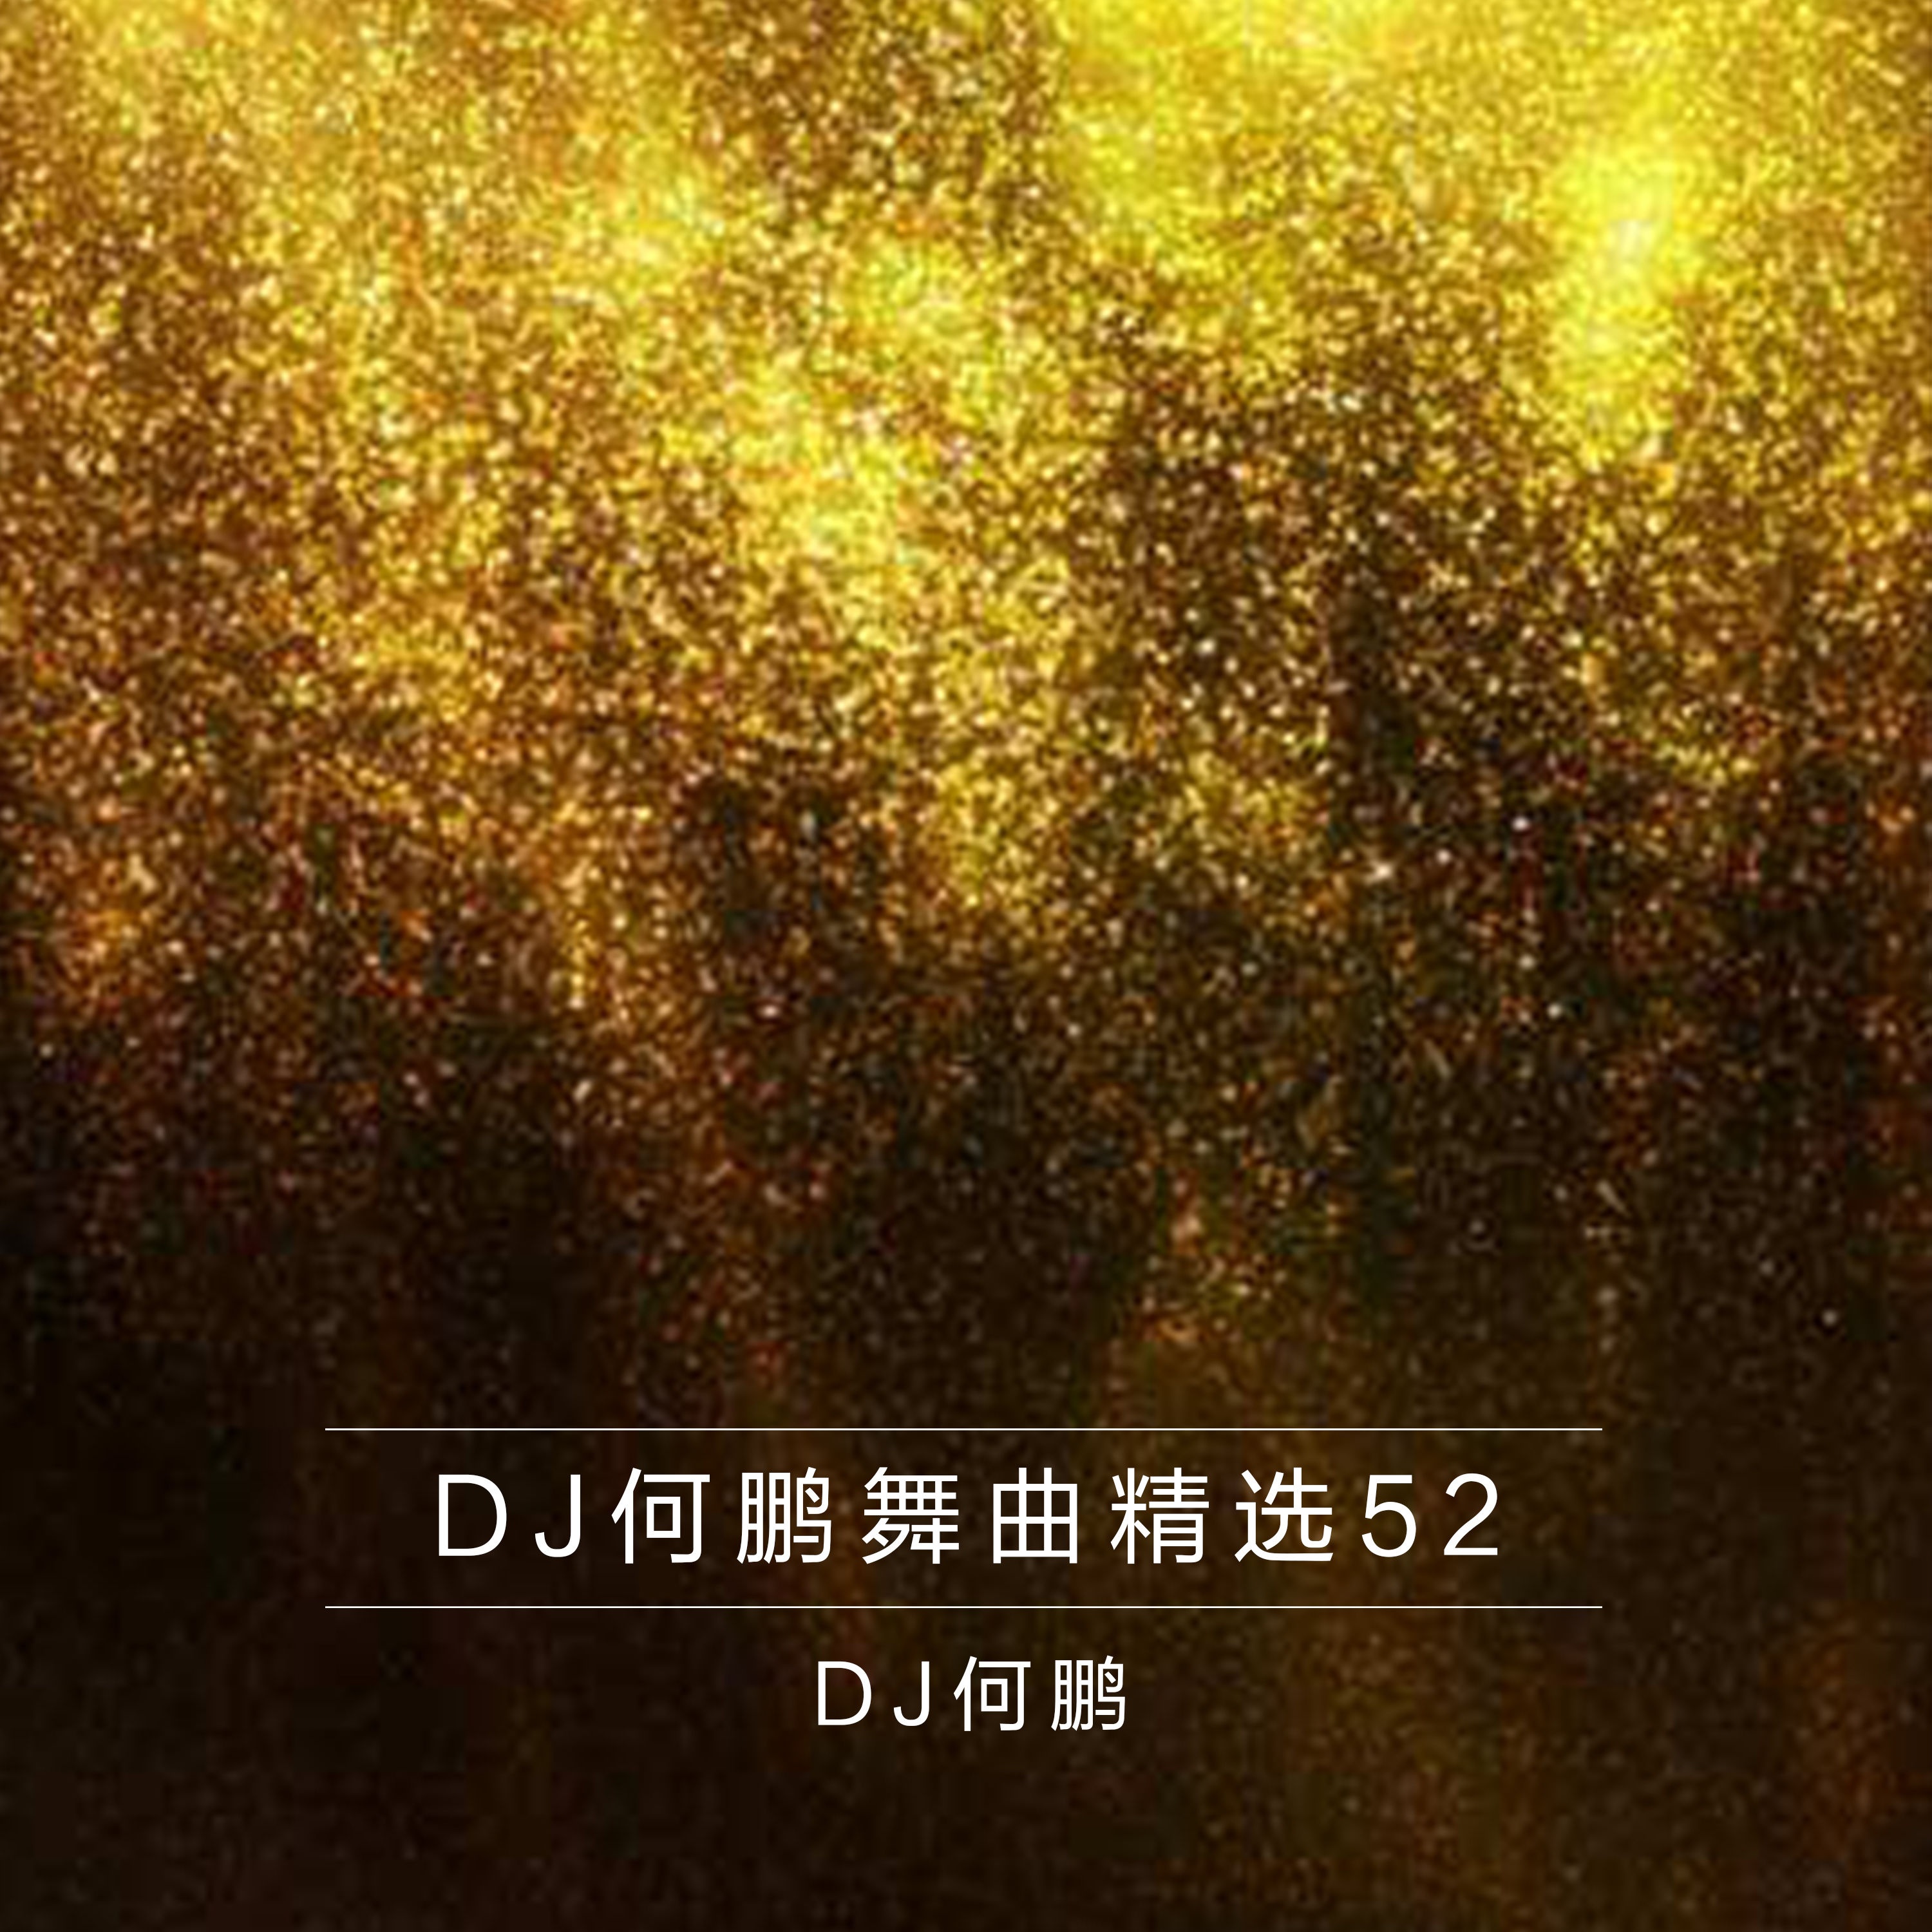 zhi xiang yi ge ren guo DJ Version